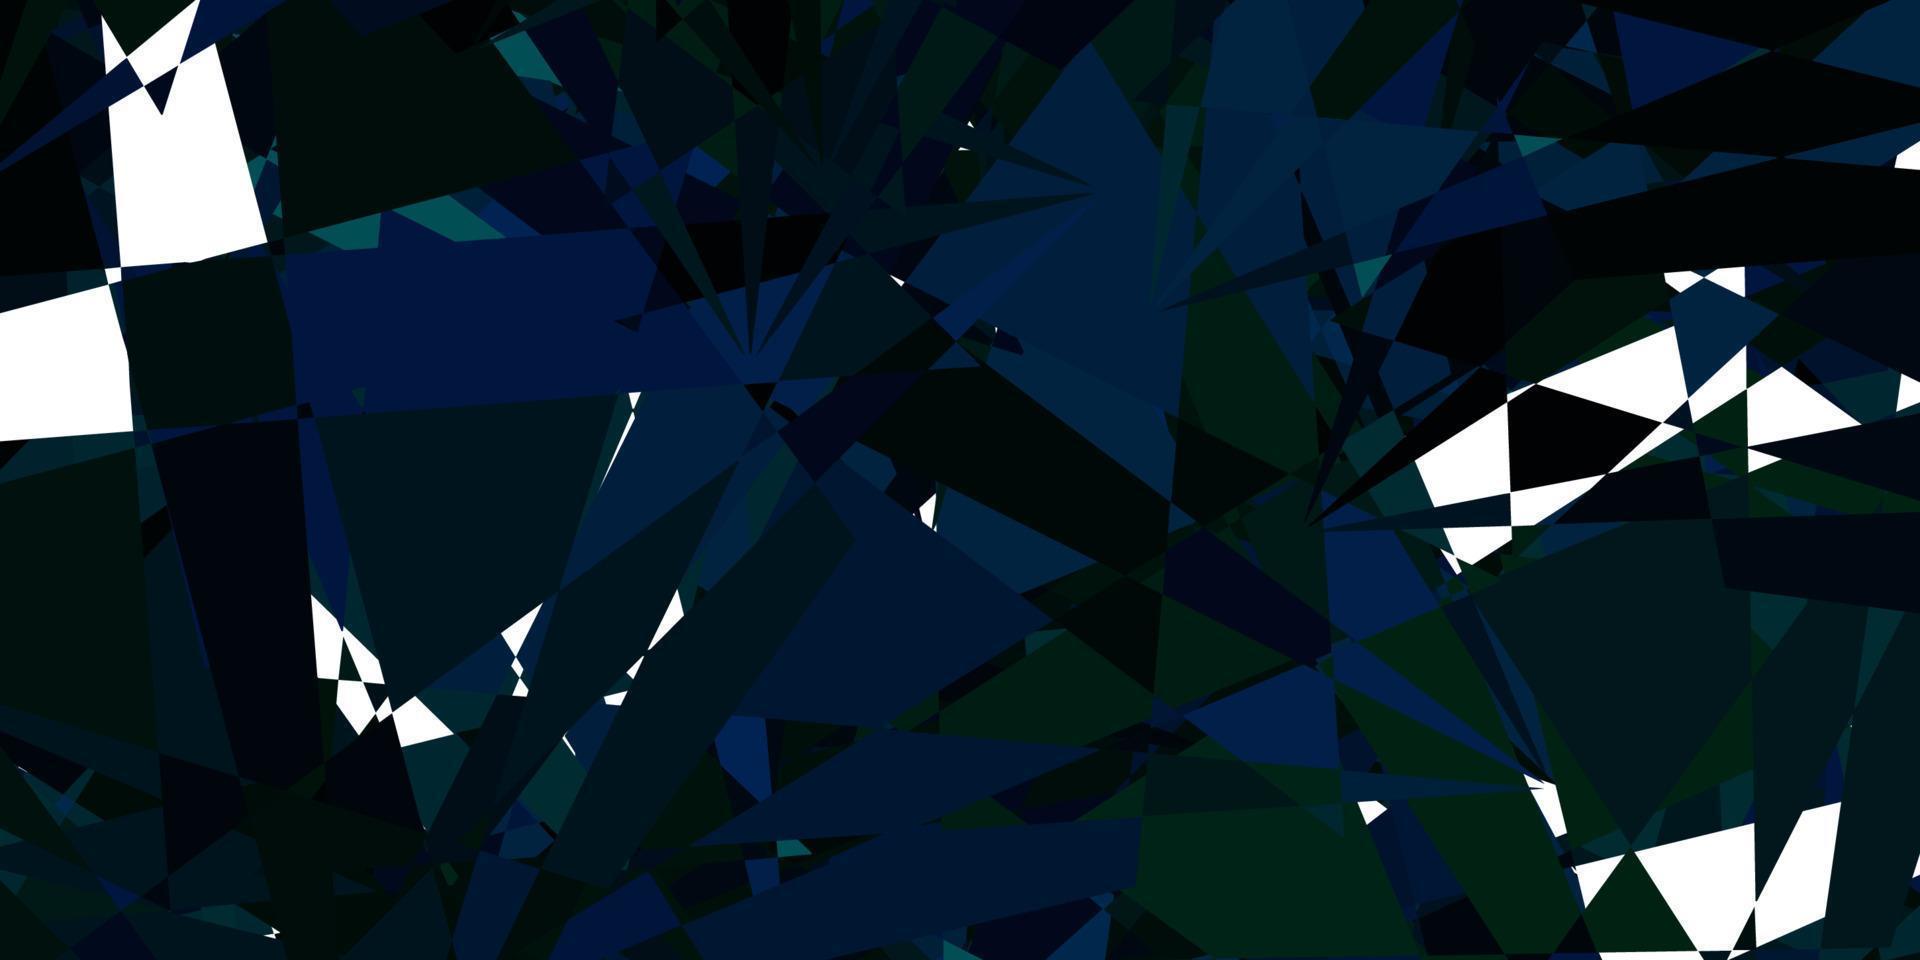 patrón de vector azul oscuro, verde con formas poligonales.